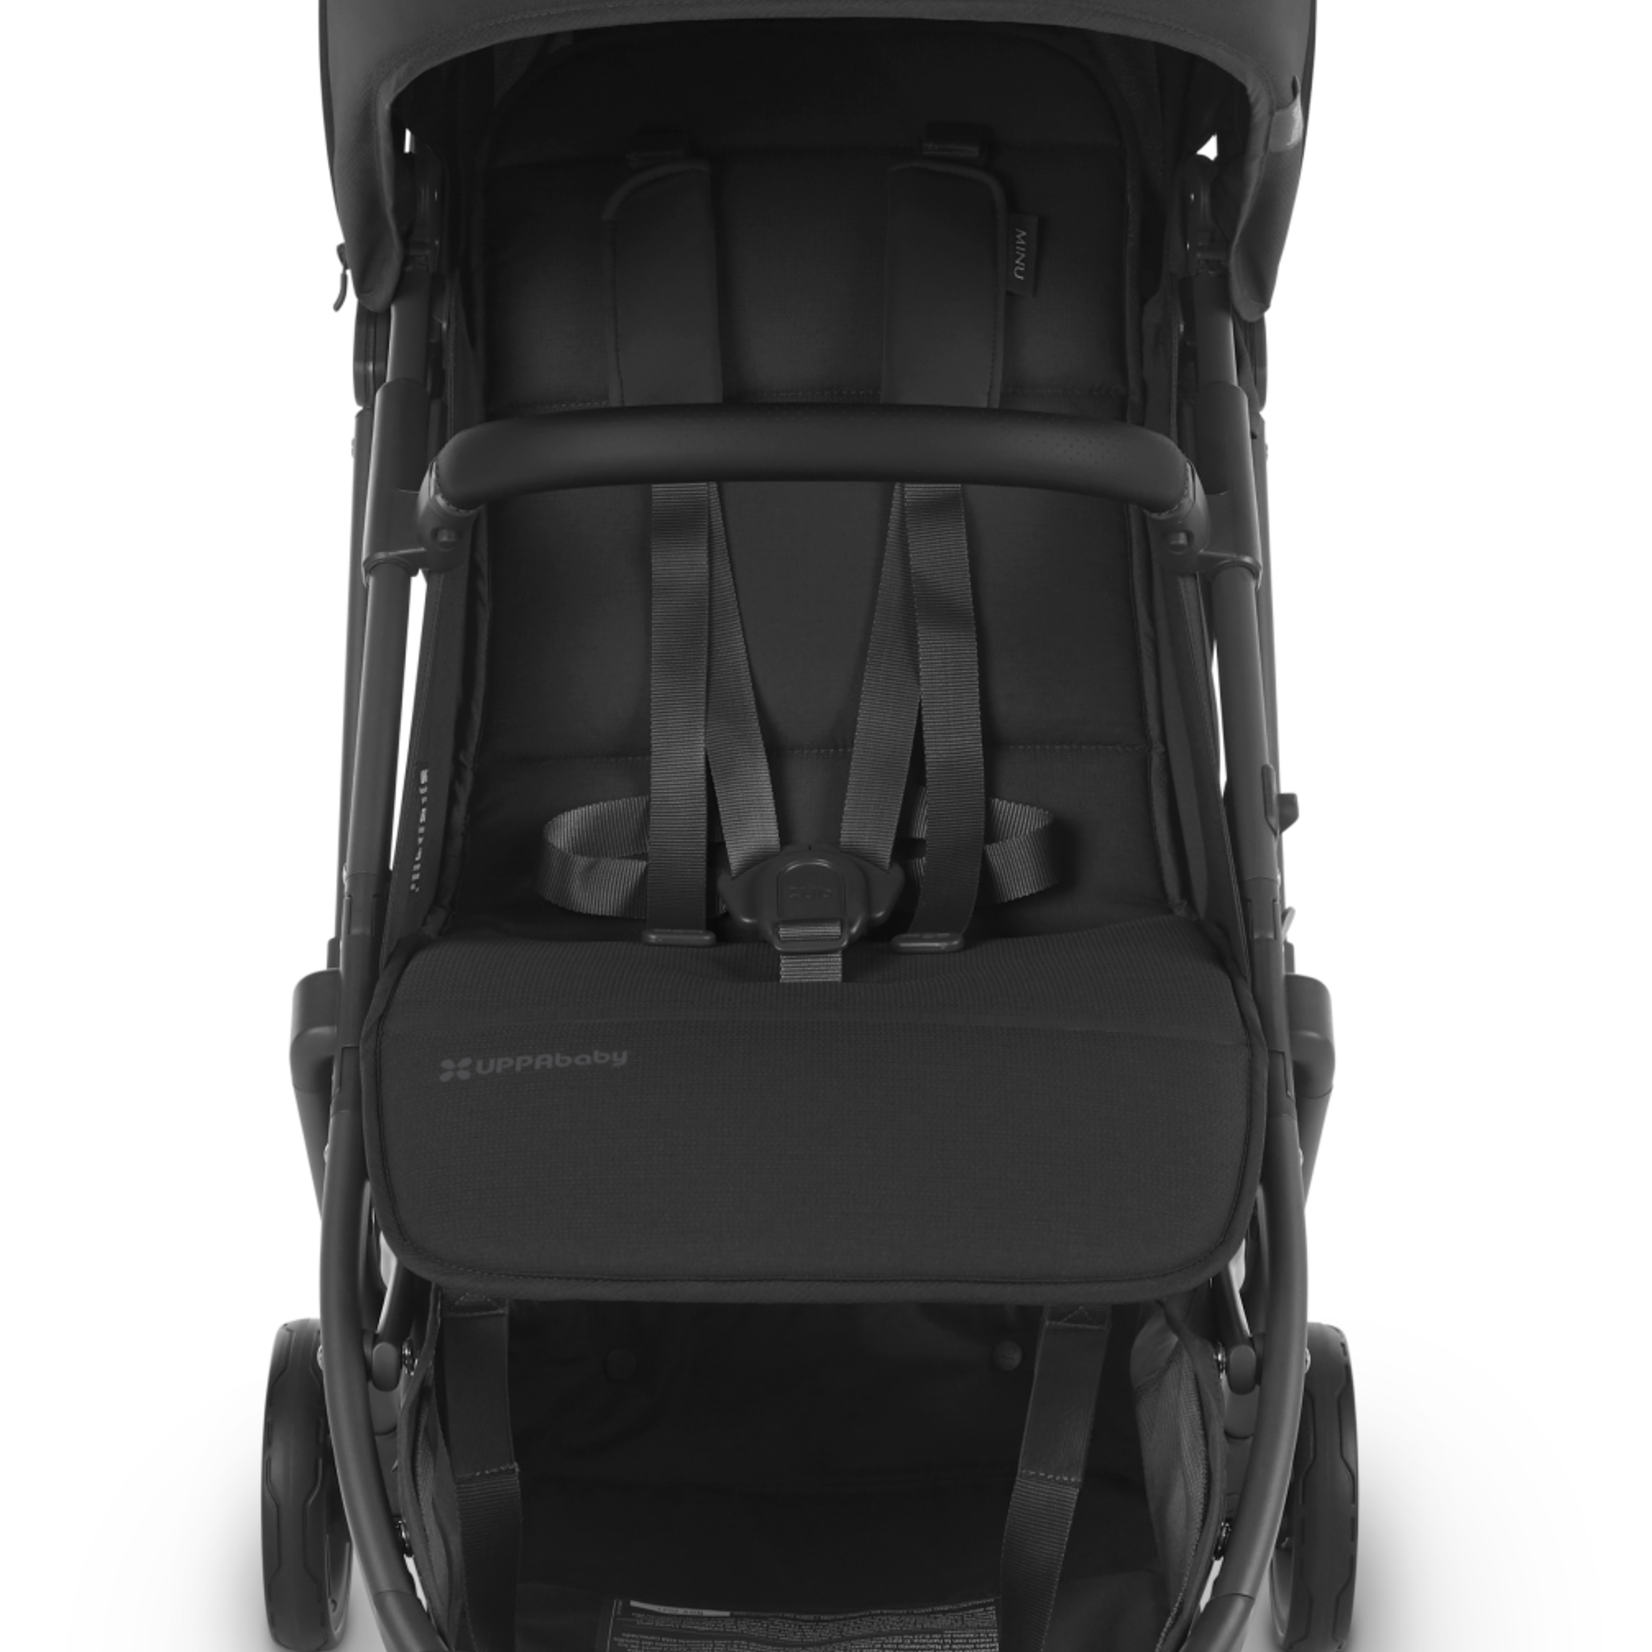 Uppababy MINU V2 Stroller - Charcoal/Carbon/Black Leather (Jake)